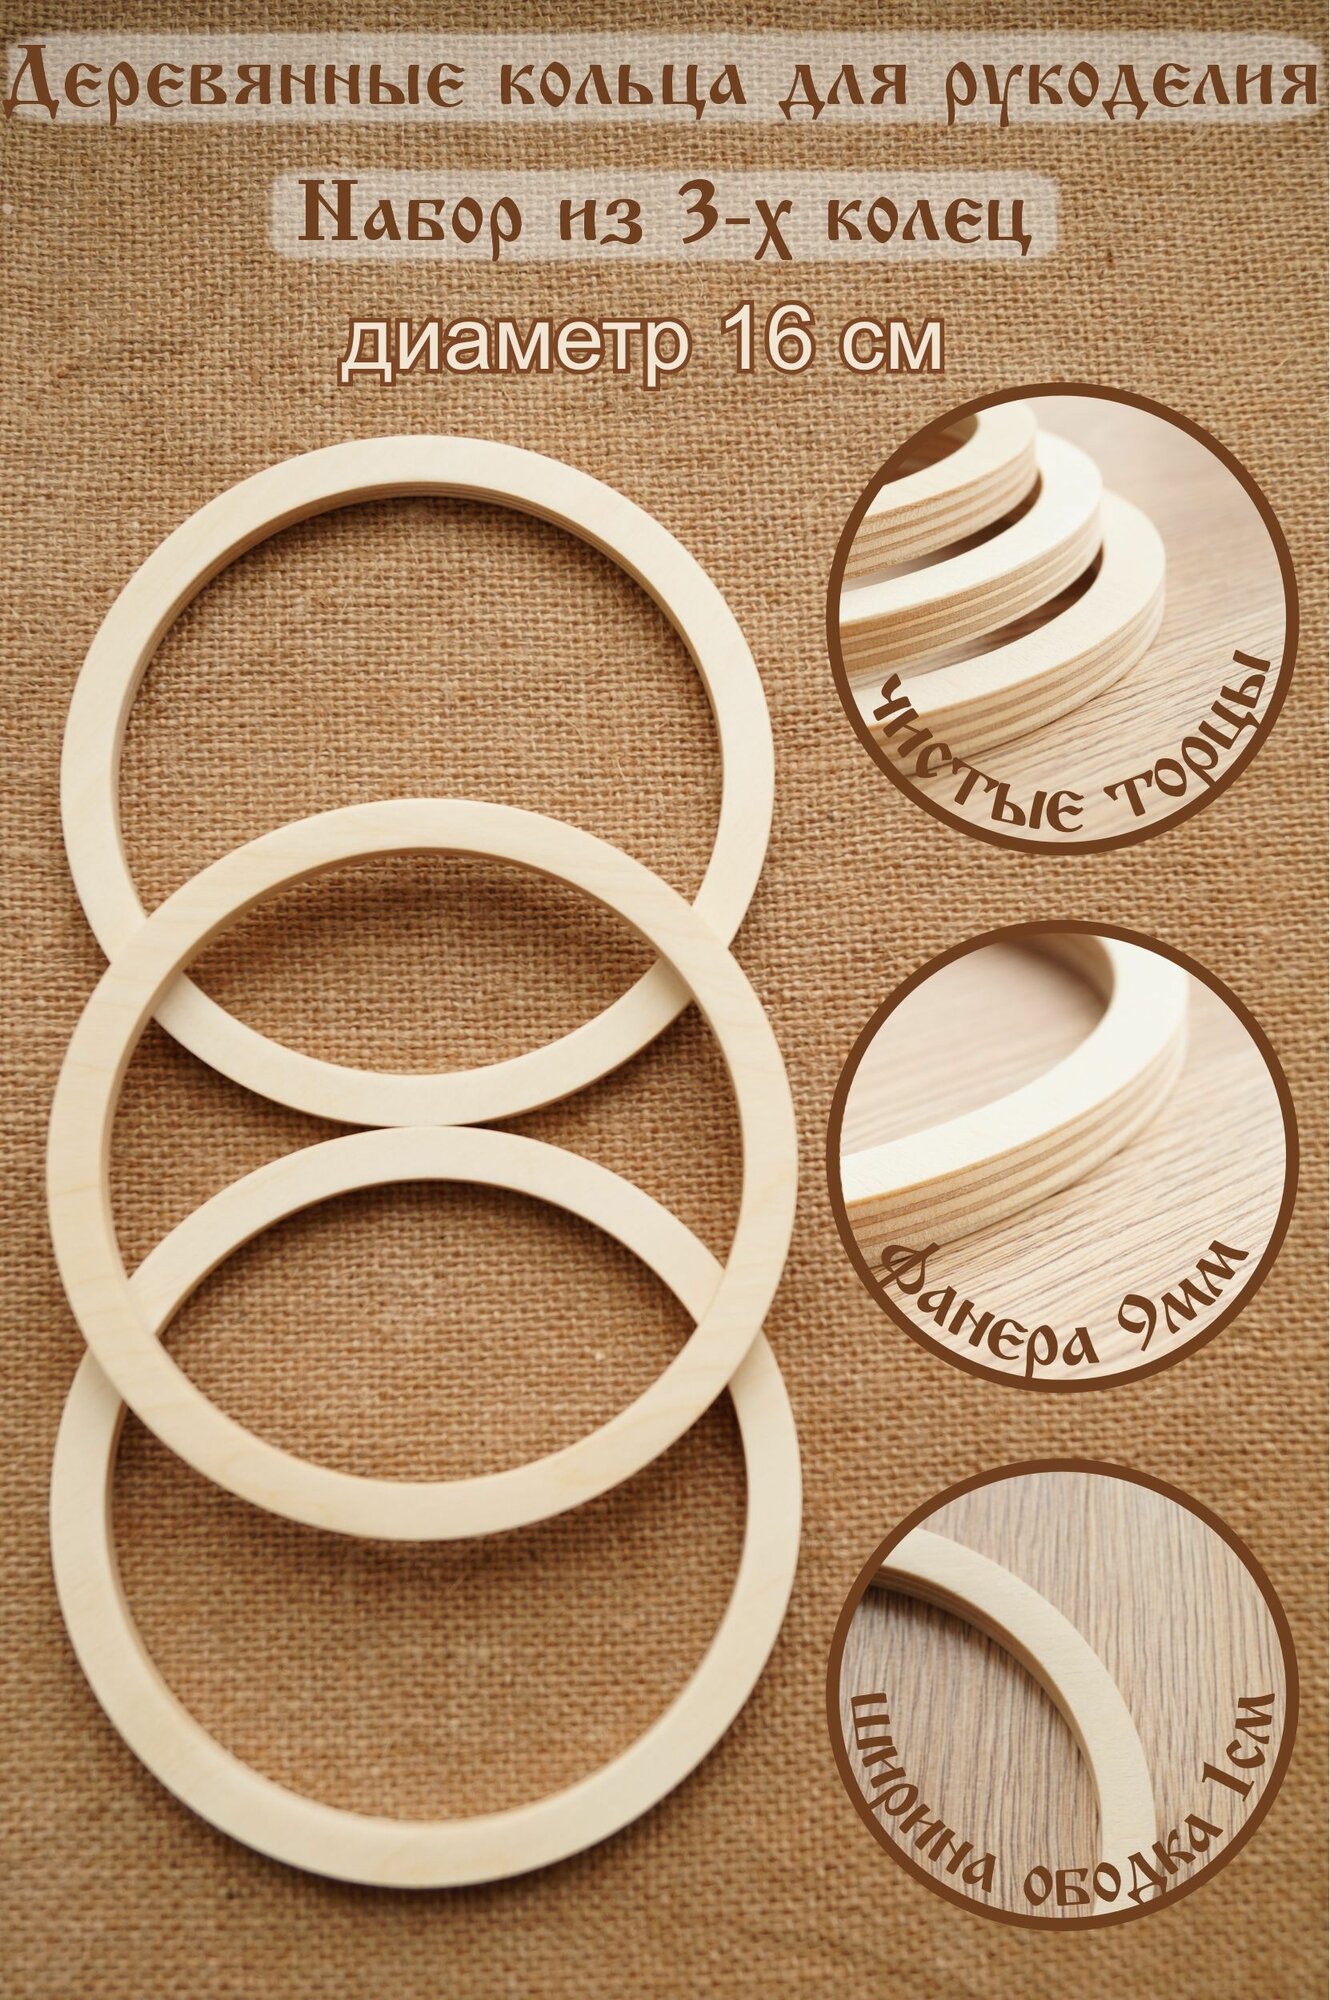 Кольца для макраме, кольца для ловца снов, мобилей, из фанеры, диаметр 16см